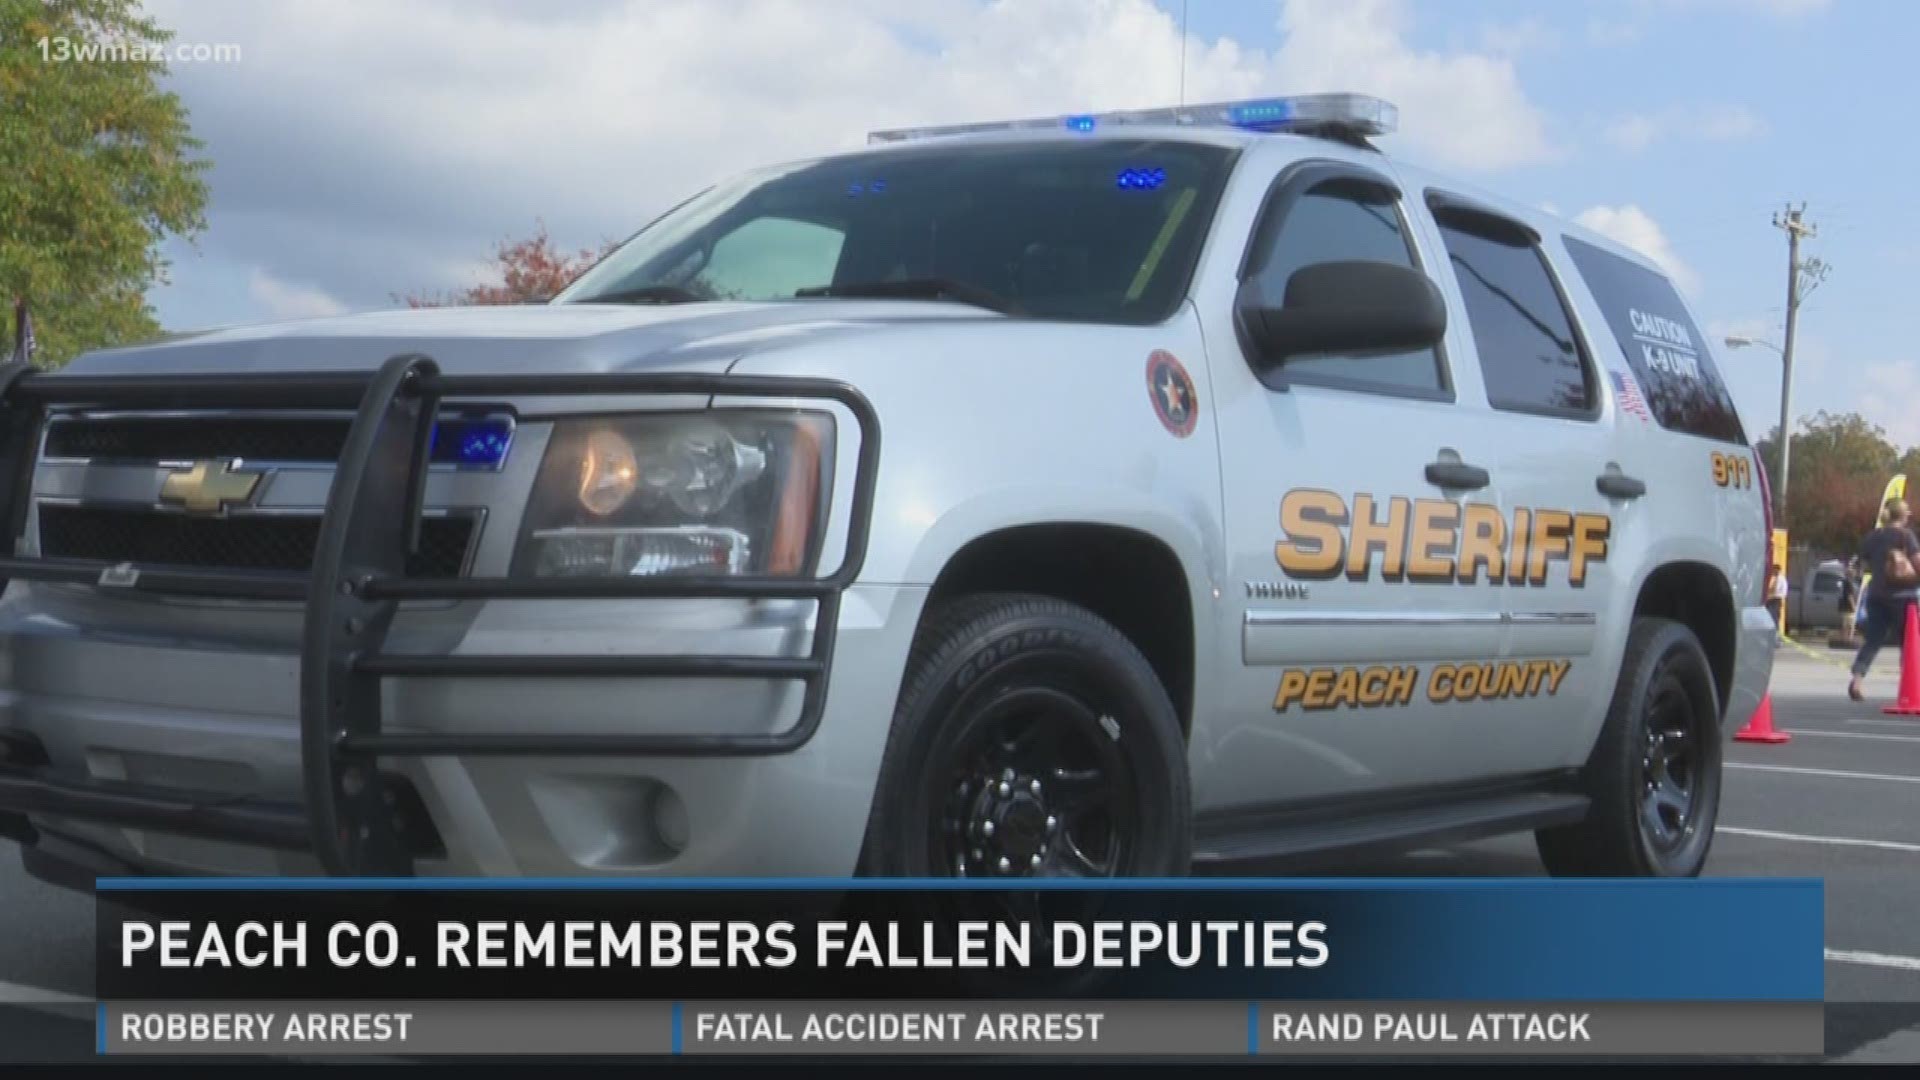 Peach Co. remembers fallen deputies